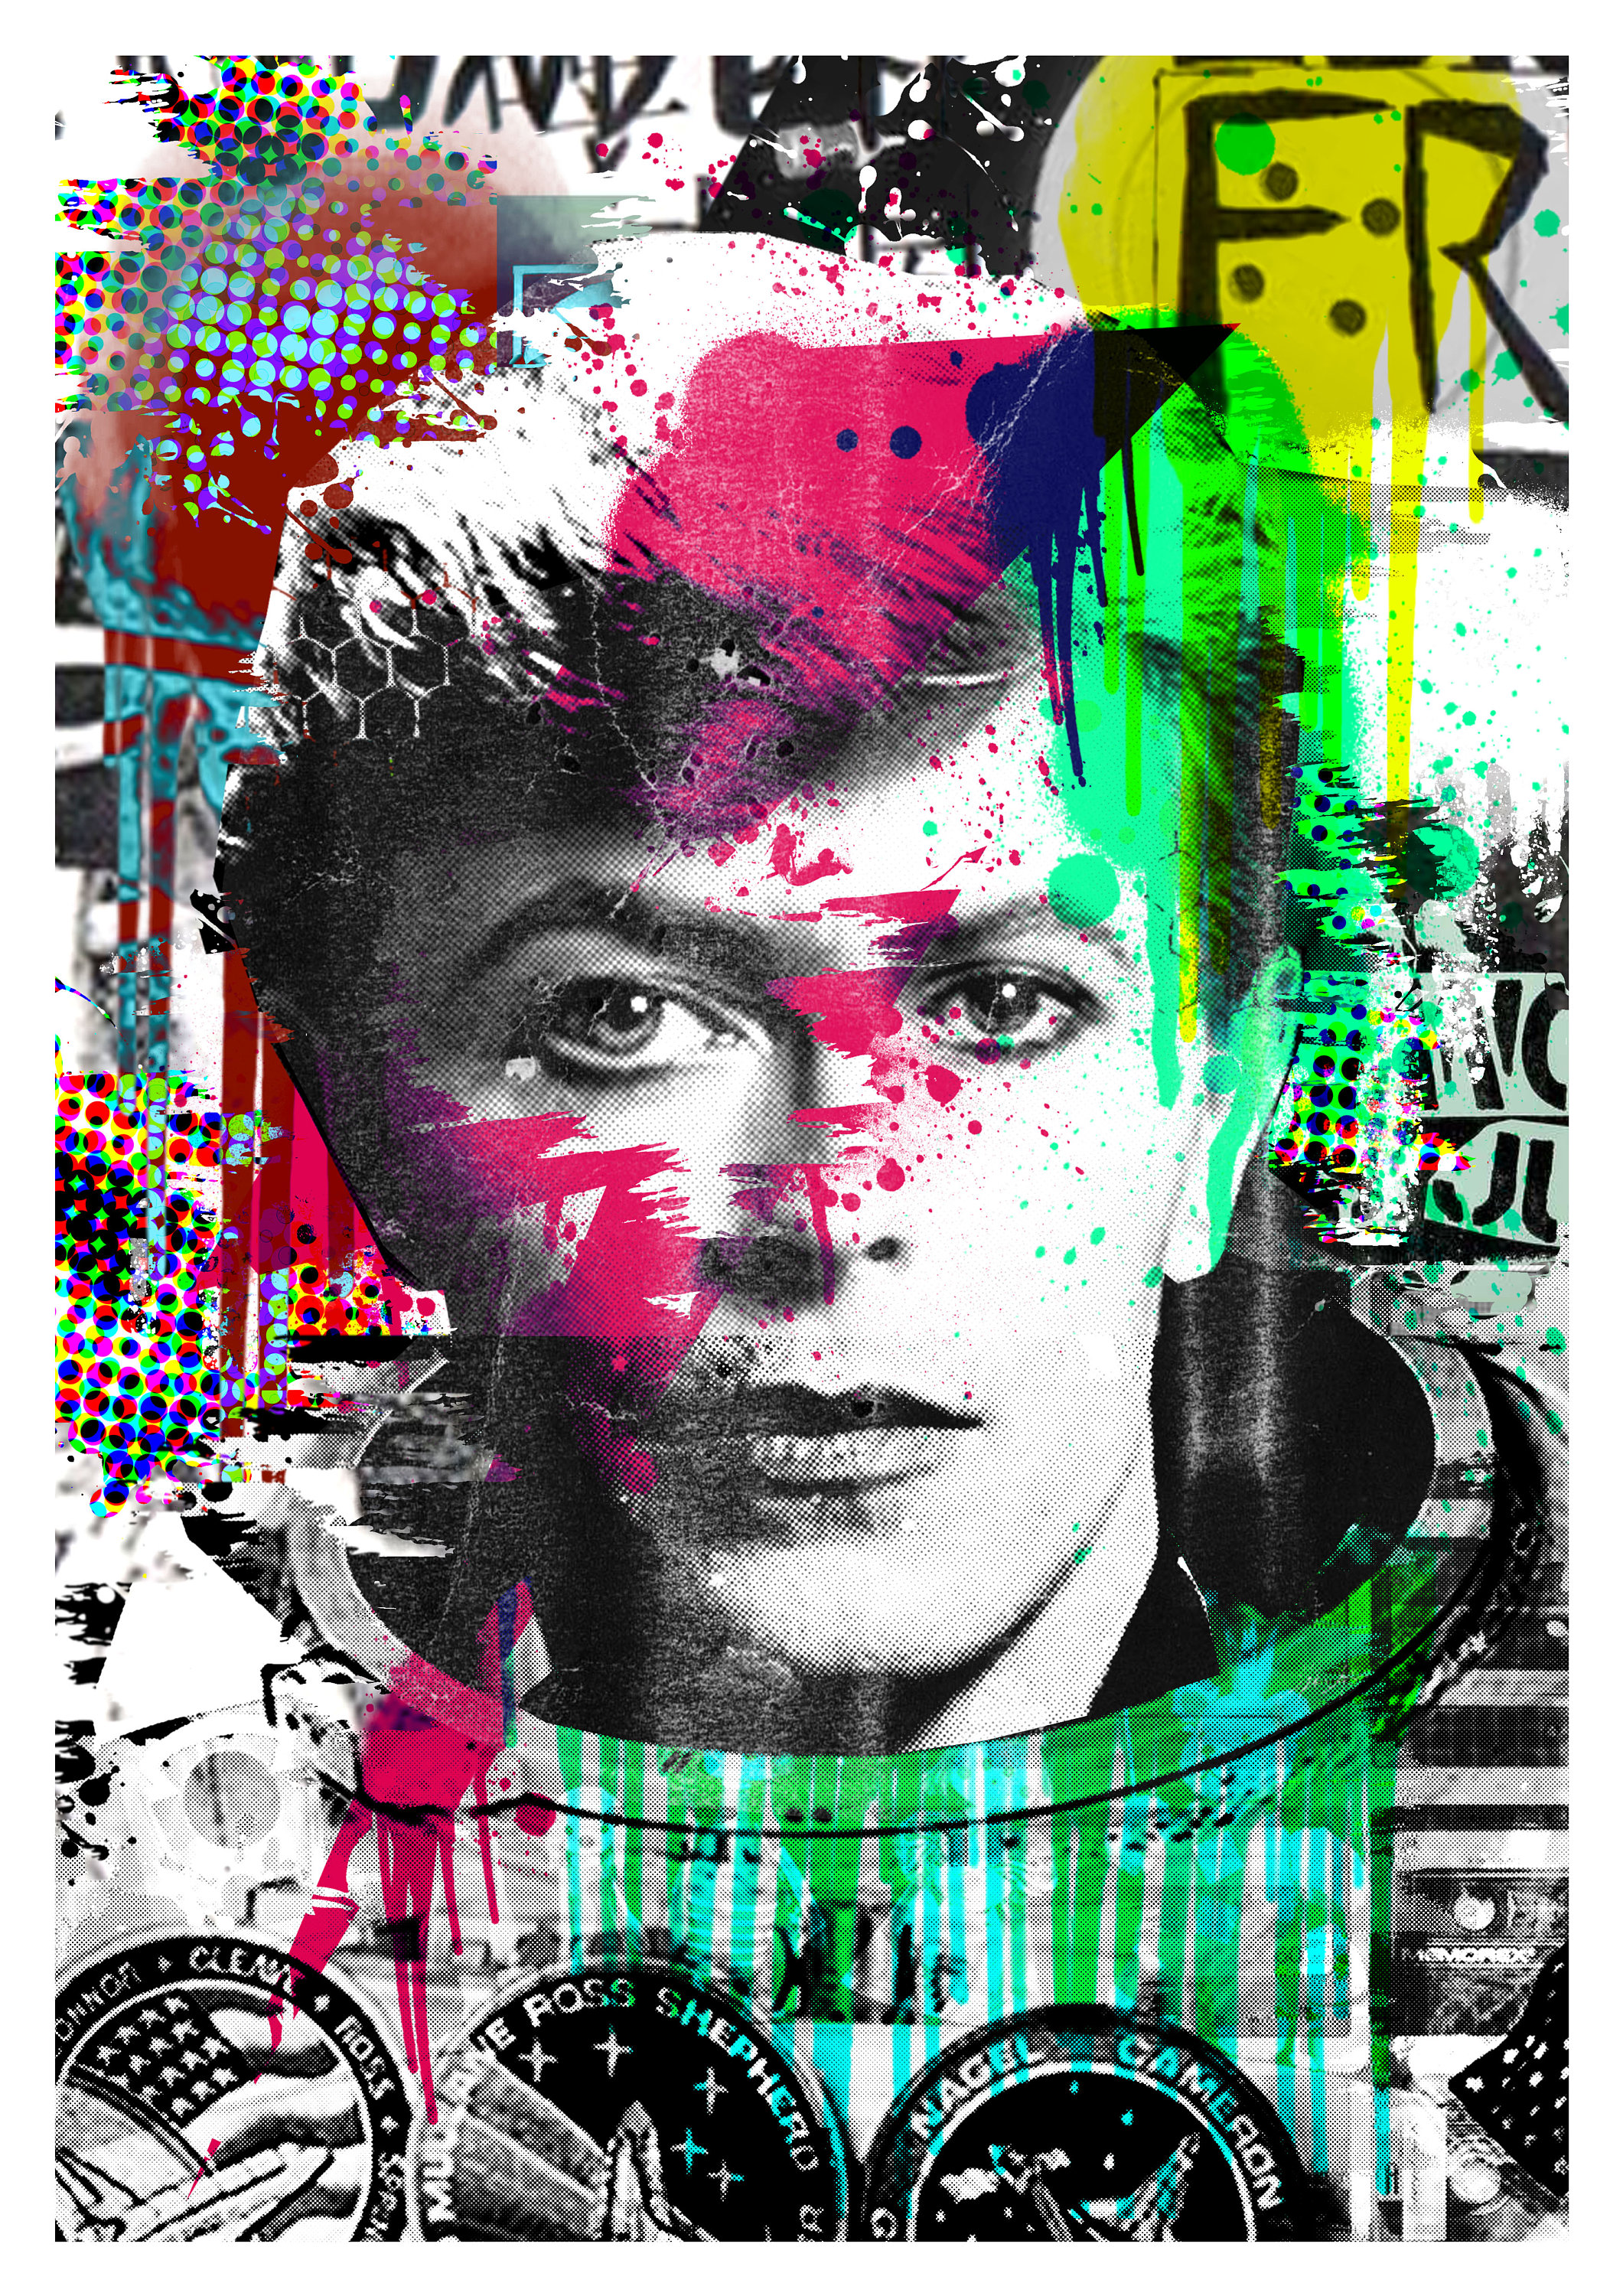 Bowie Digital Art David Bowie - Etsy